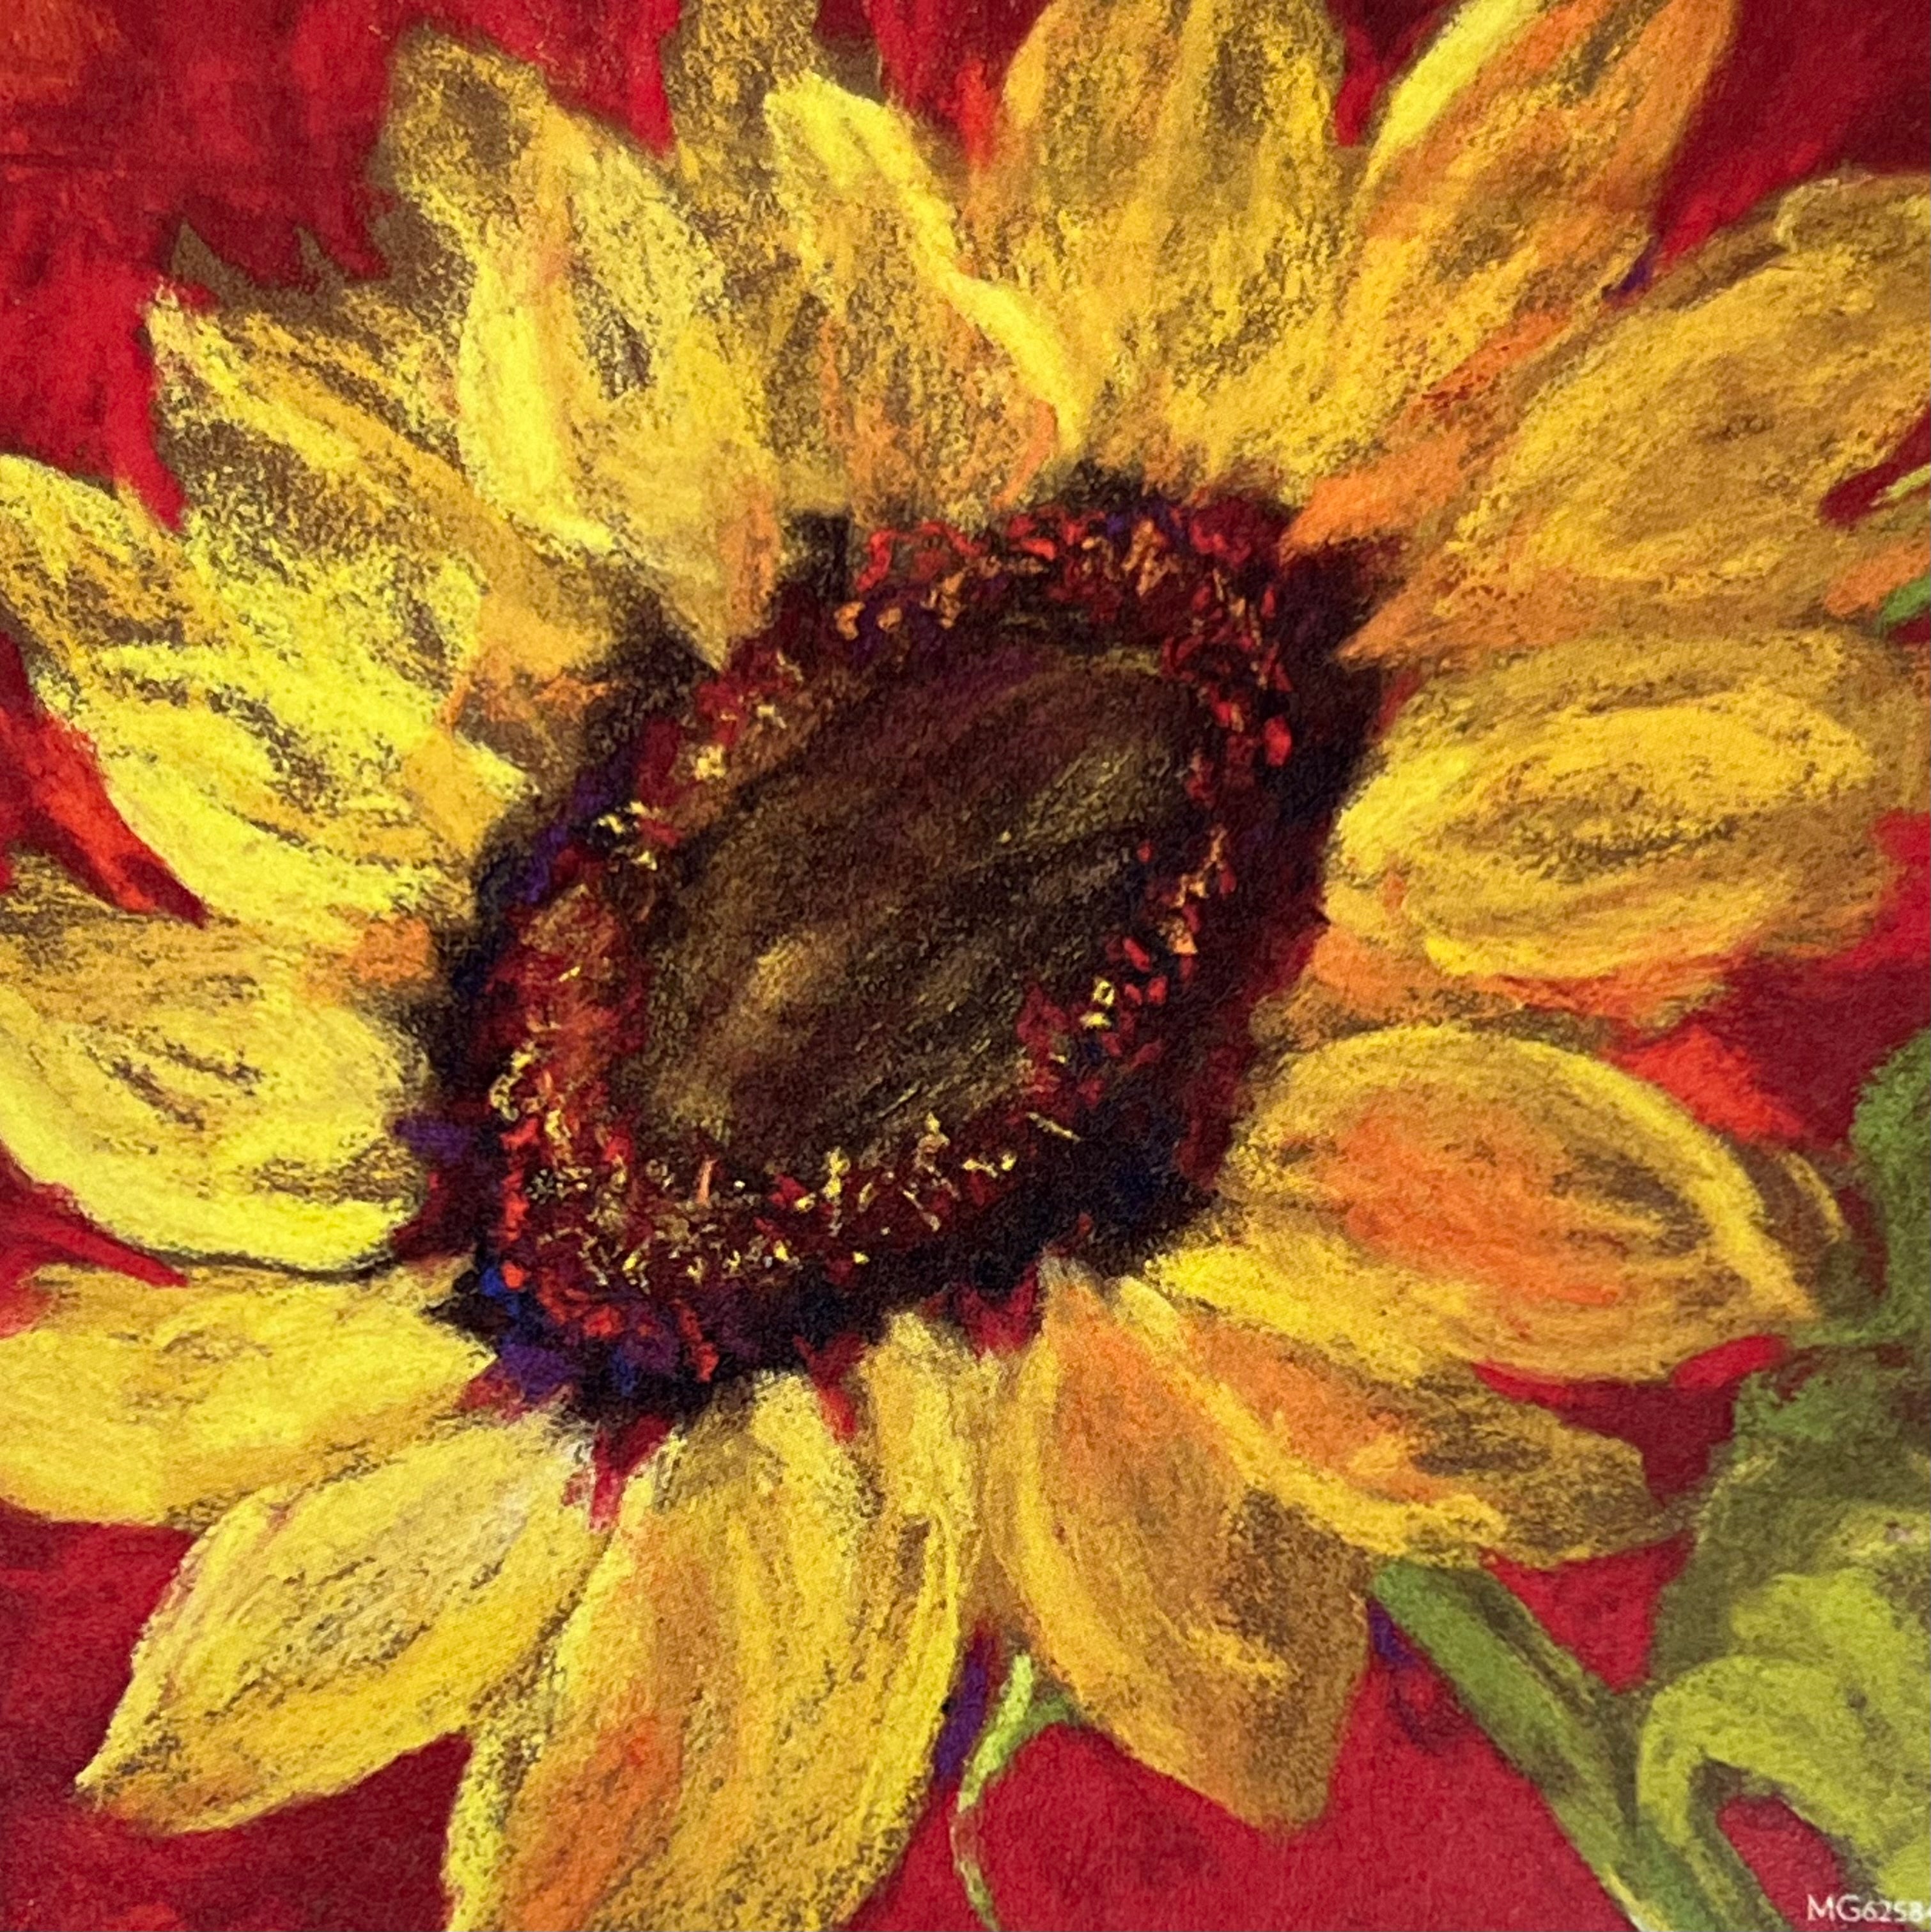 Sunflower Magnet